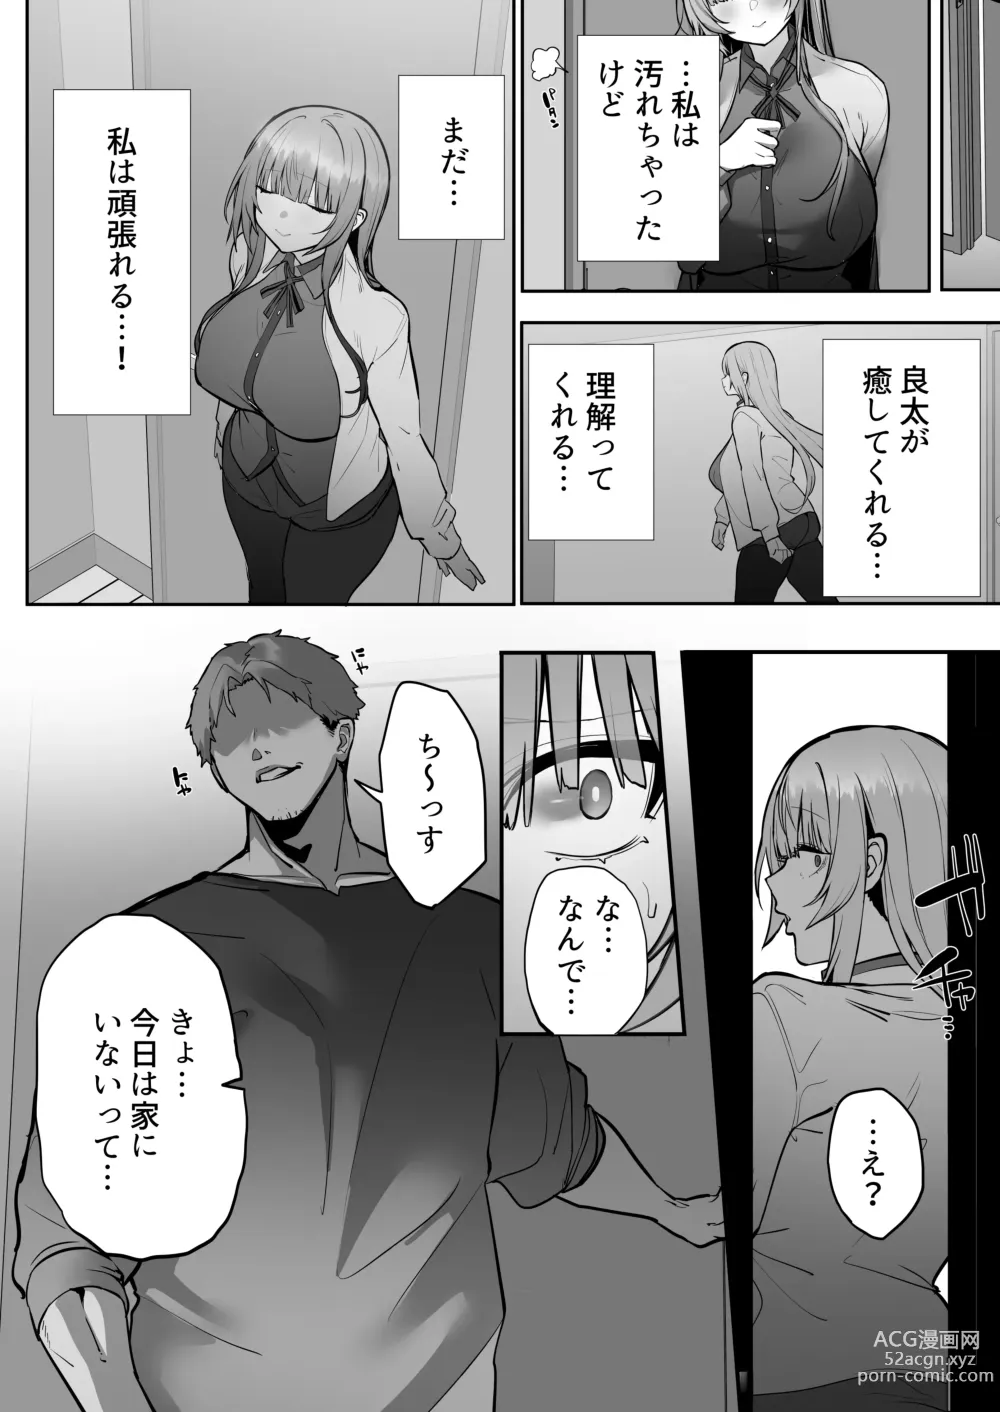 Page 51 of doujinshi Netorare Ochita Tsubaki